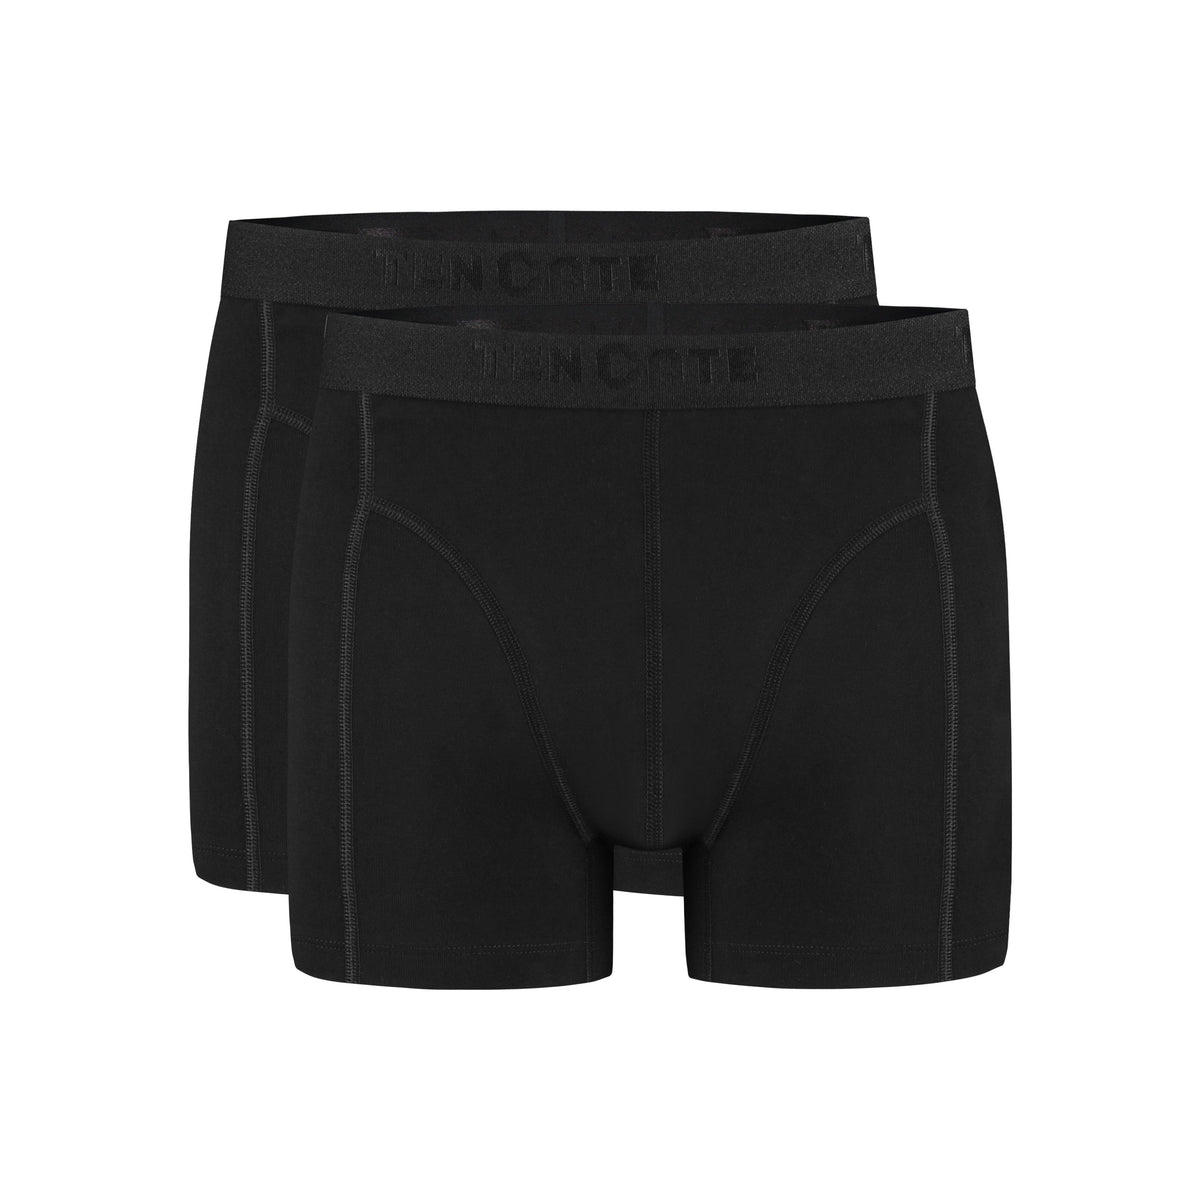 Ten Cate - 32323 - Basic Men Shorts 2-pack - Black Short Ten Cate 